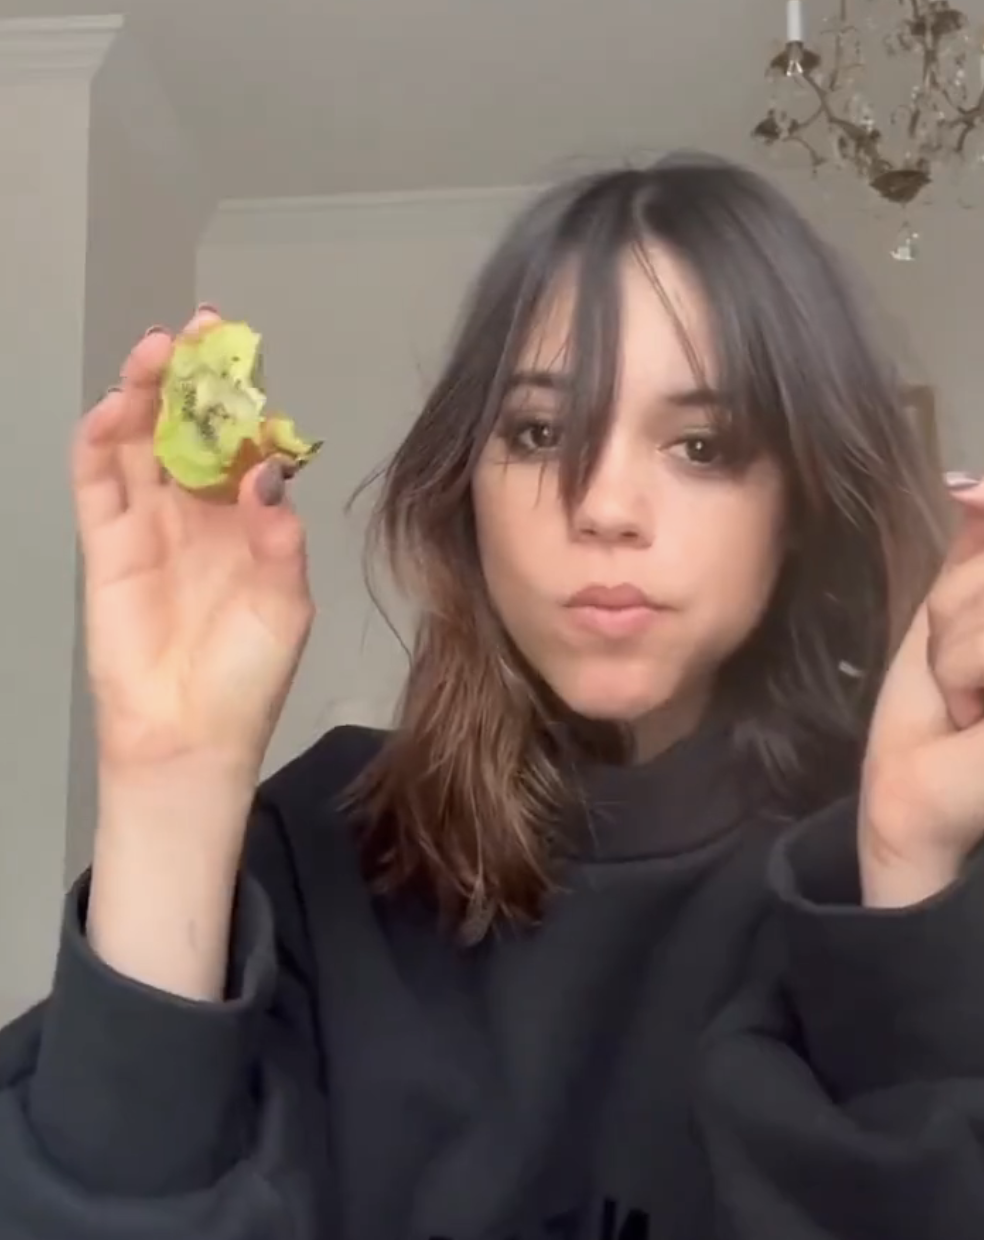 Closeup of Jenna Ortega eating a kiwi